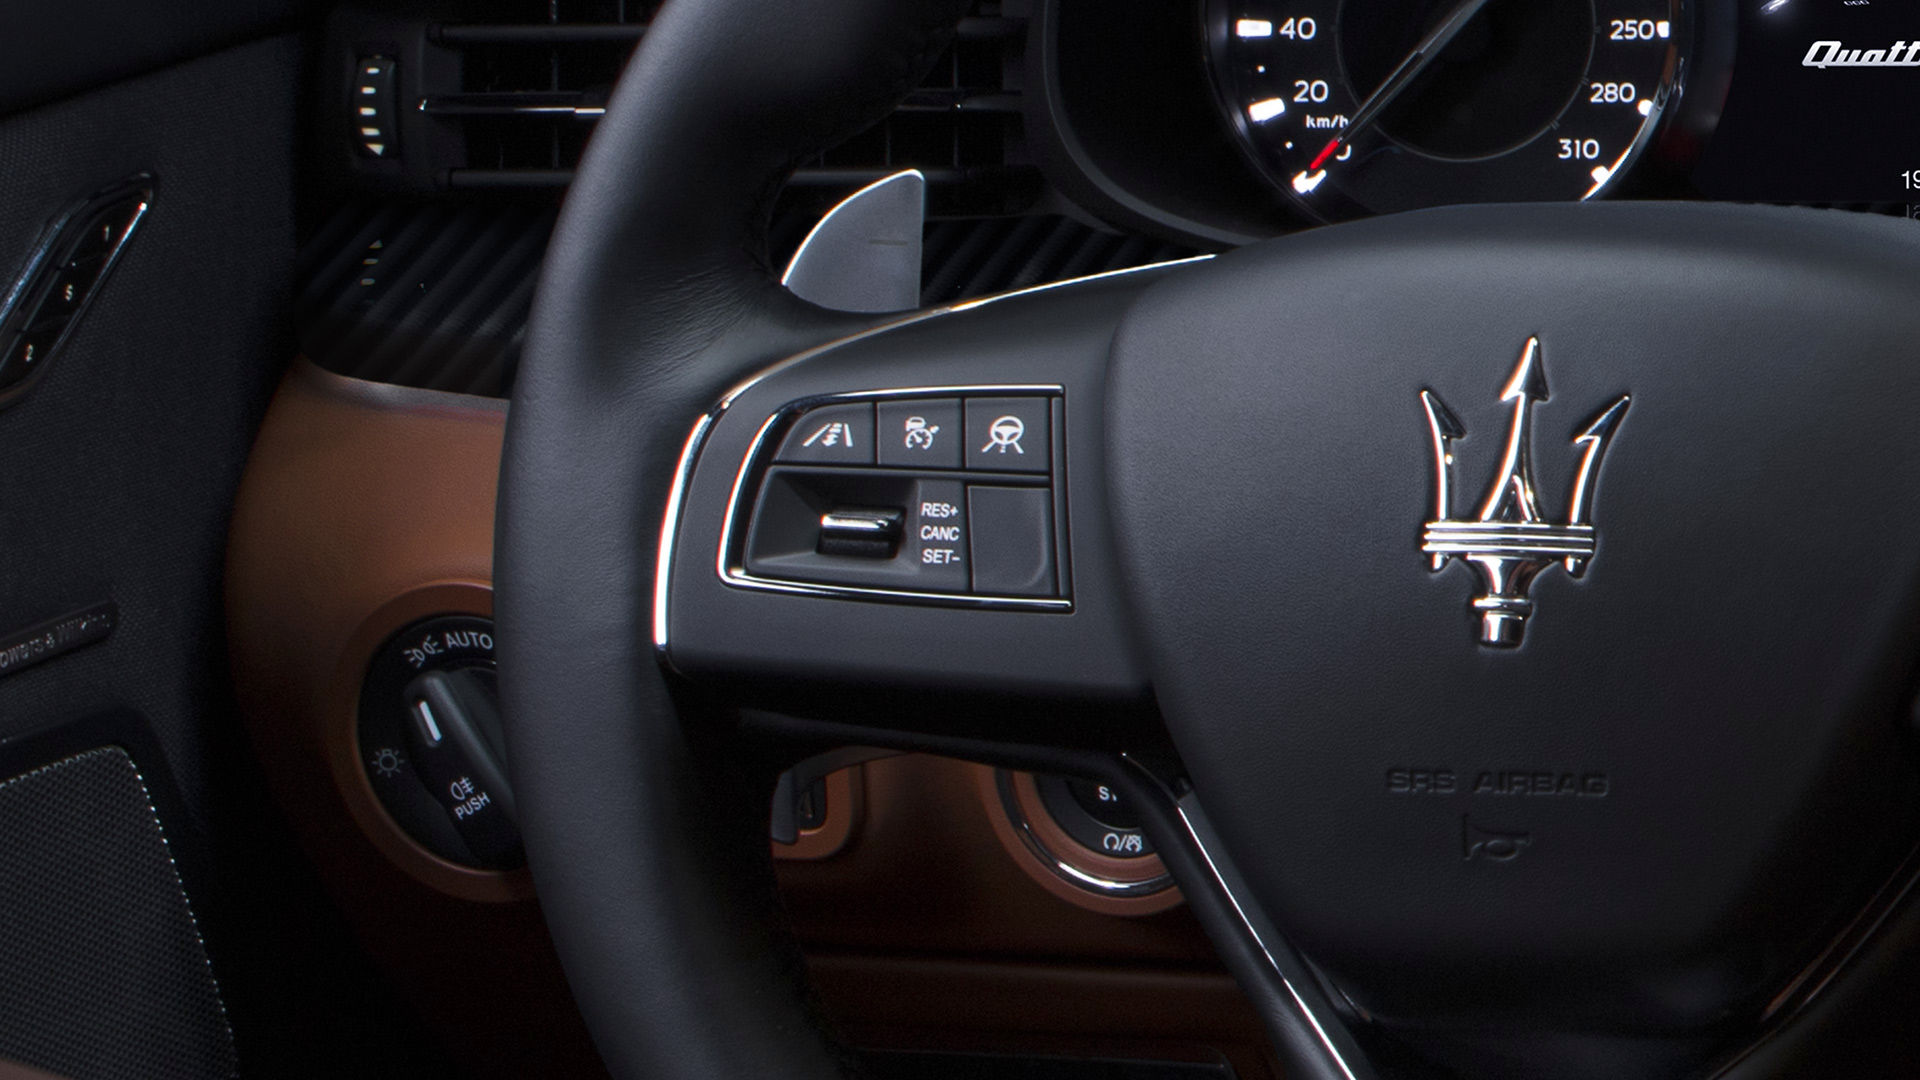 Botones de asistencia en el sedán Maserati Quattroporte